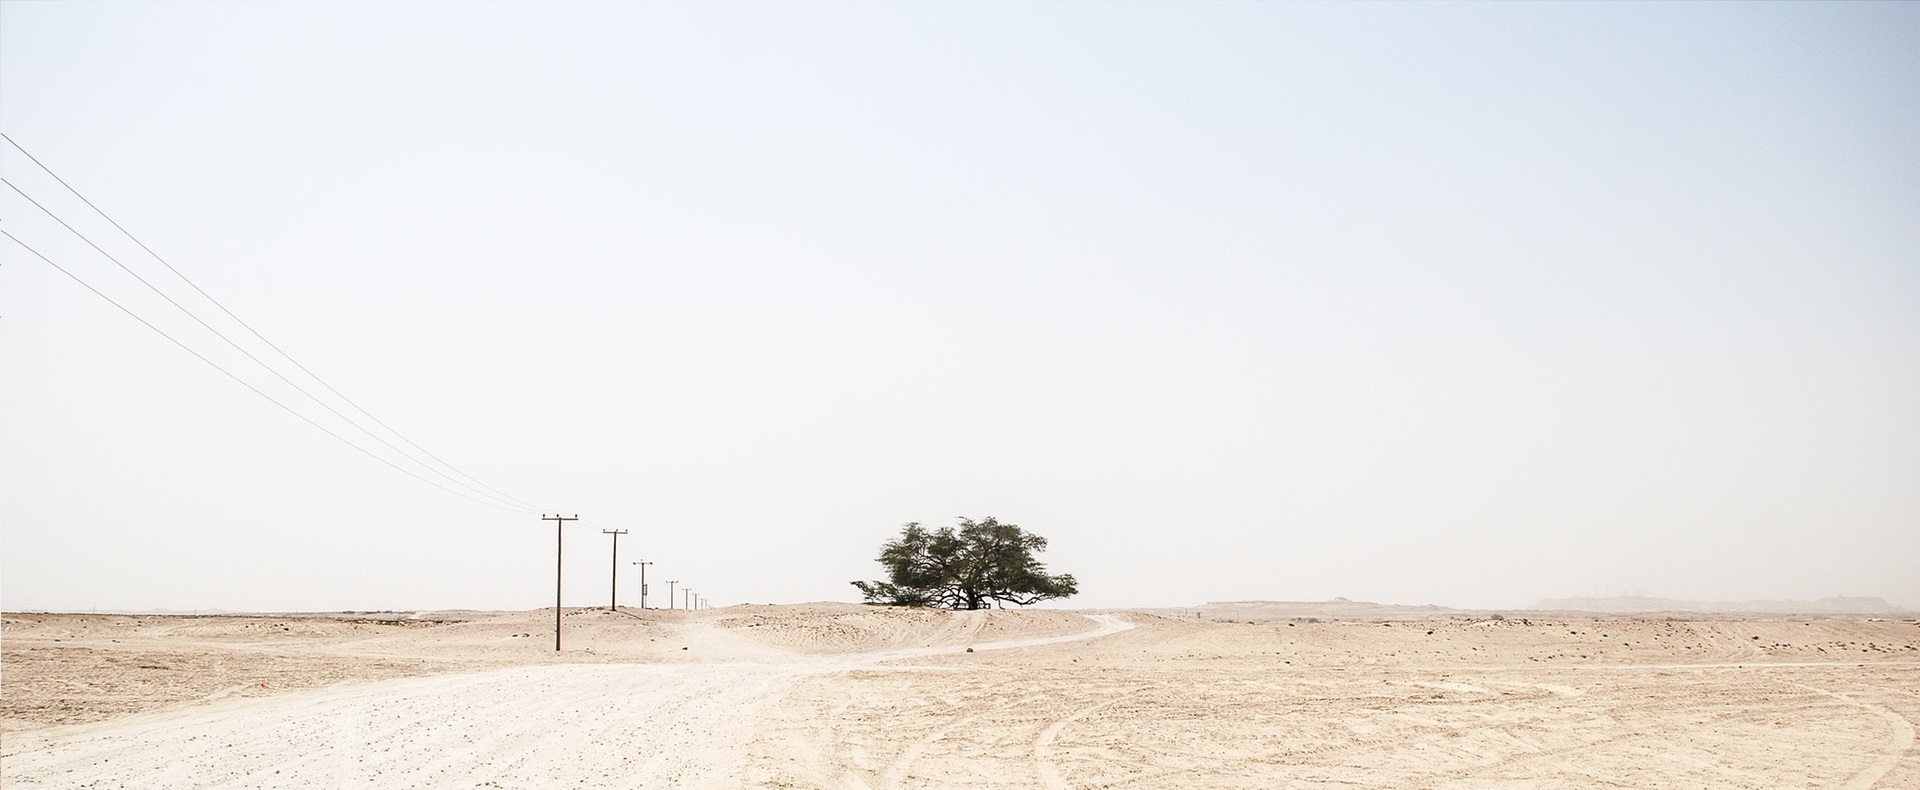 a barren desert landscape